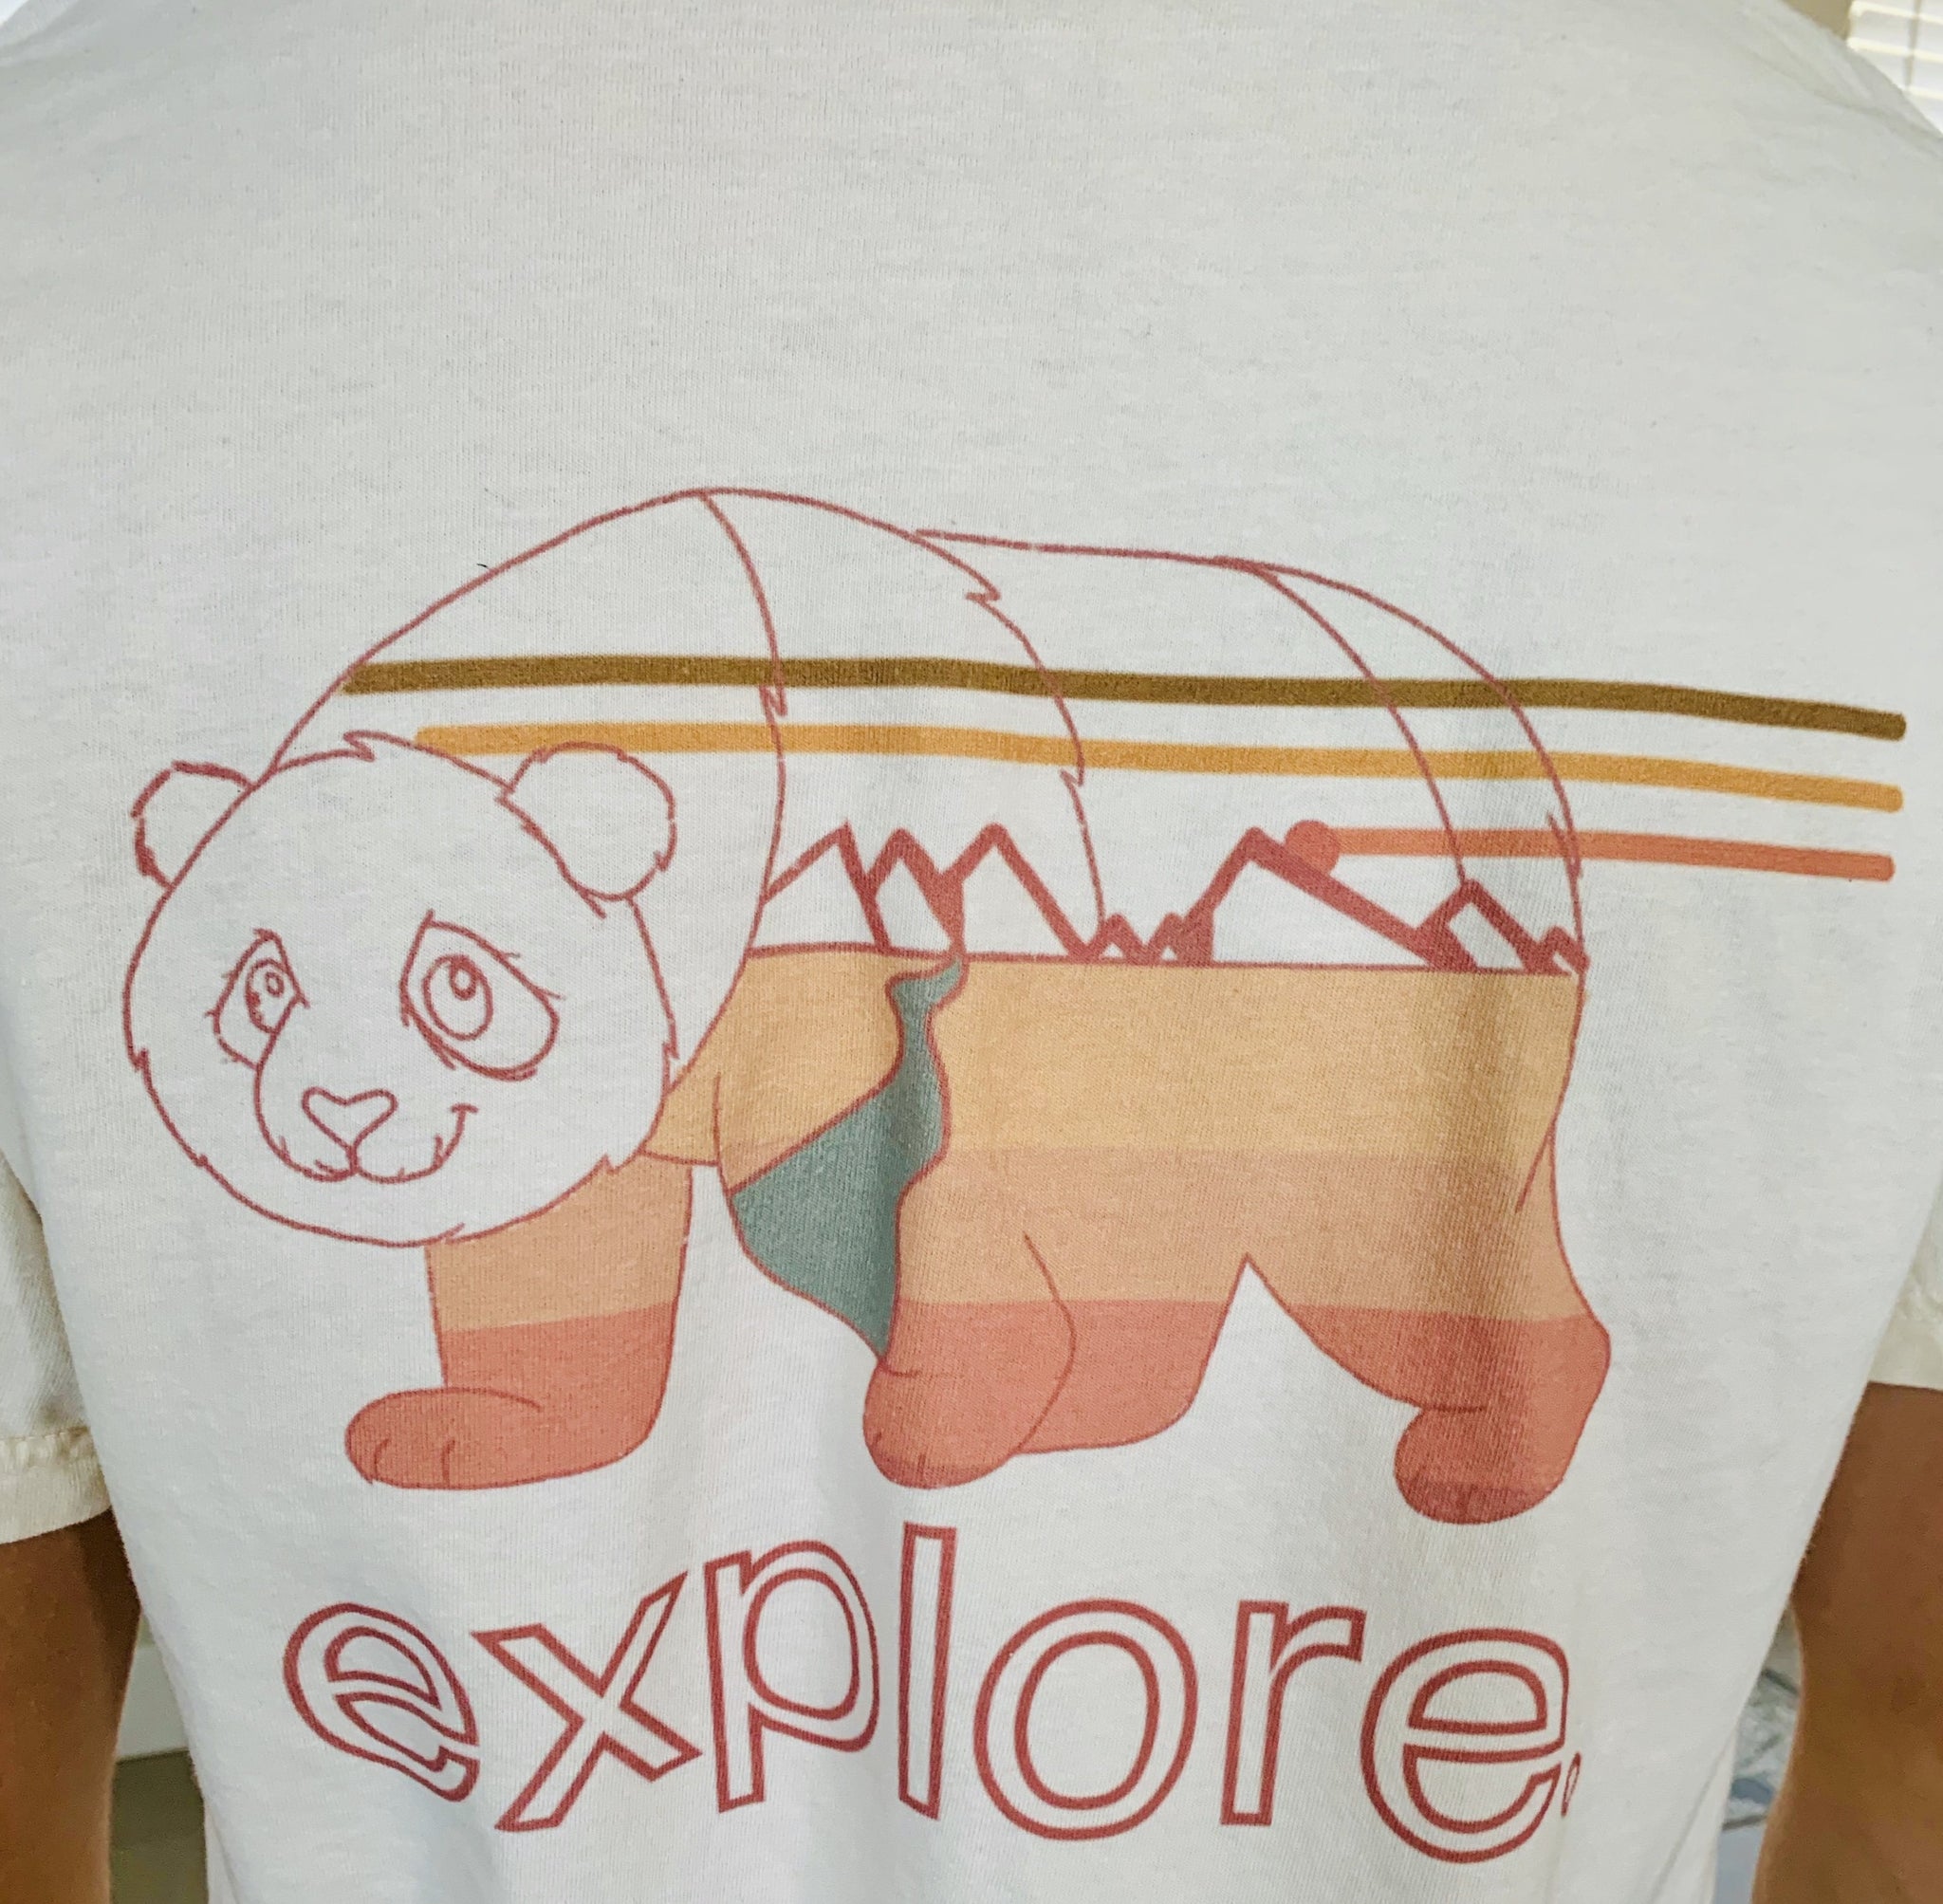 Panda EXPLORE T-Shirt